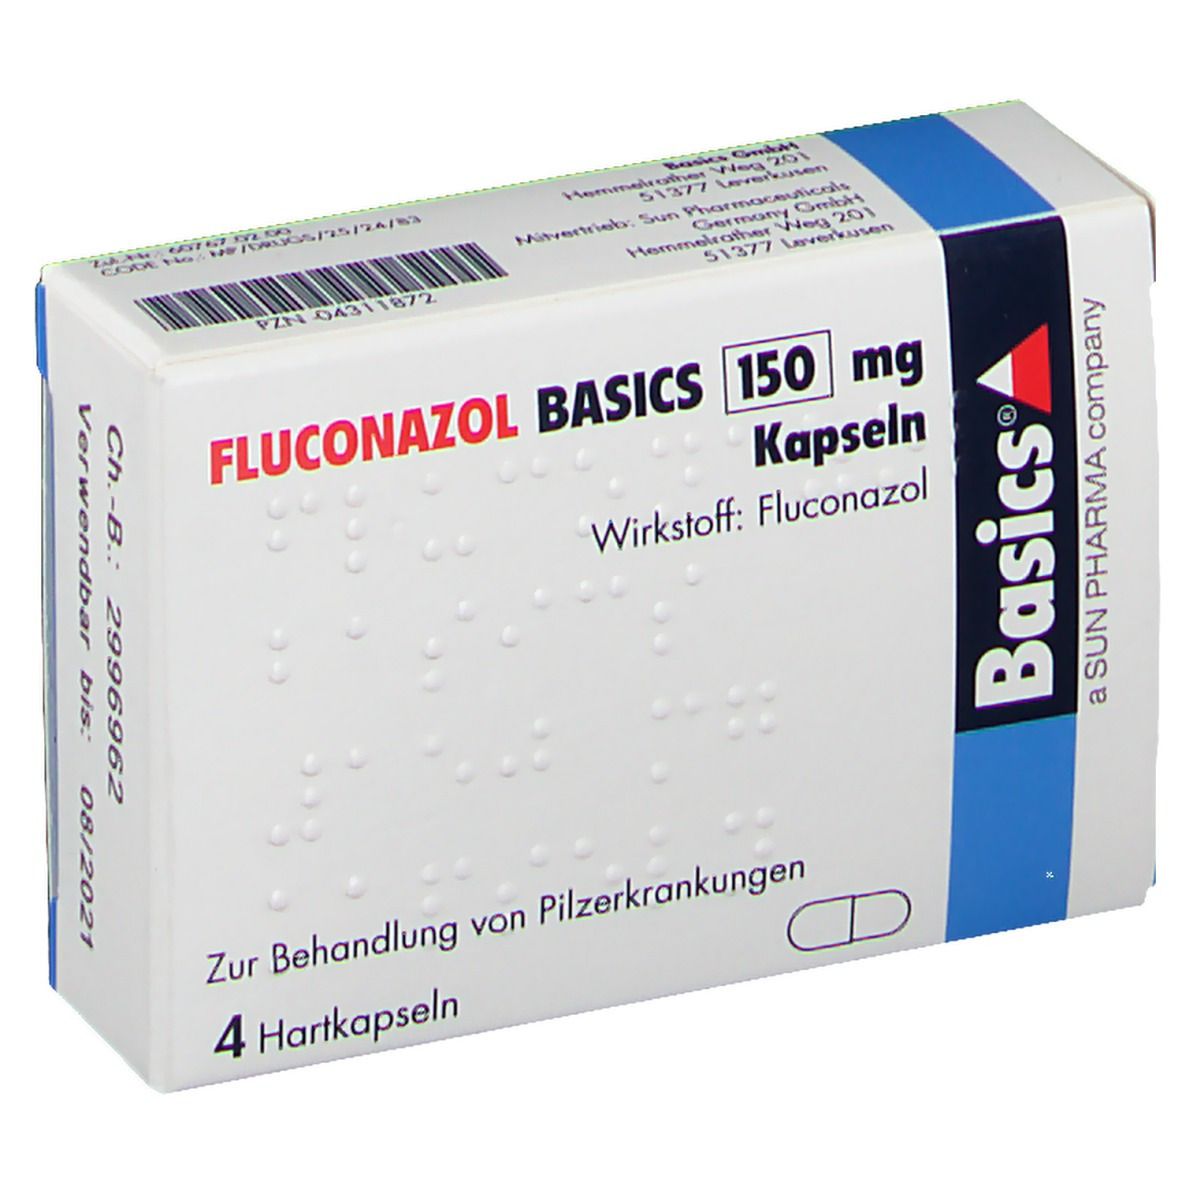 FLUCONAZOL BASICS 150 mg